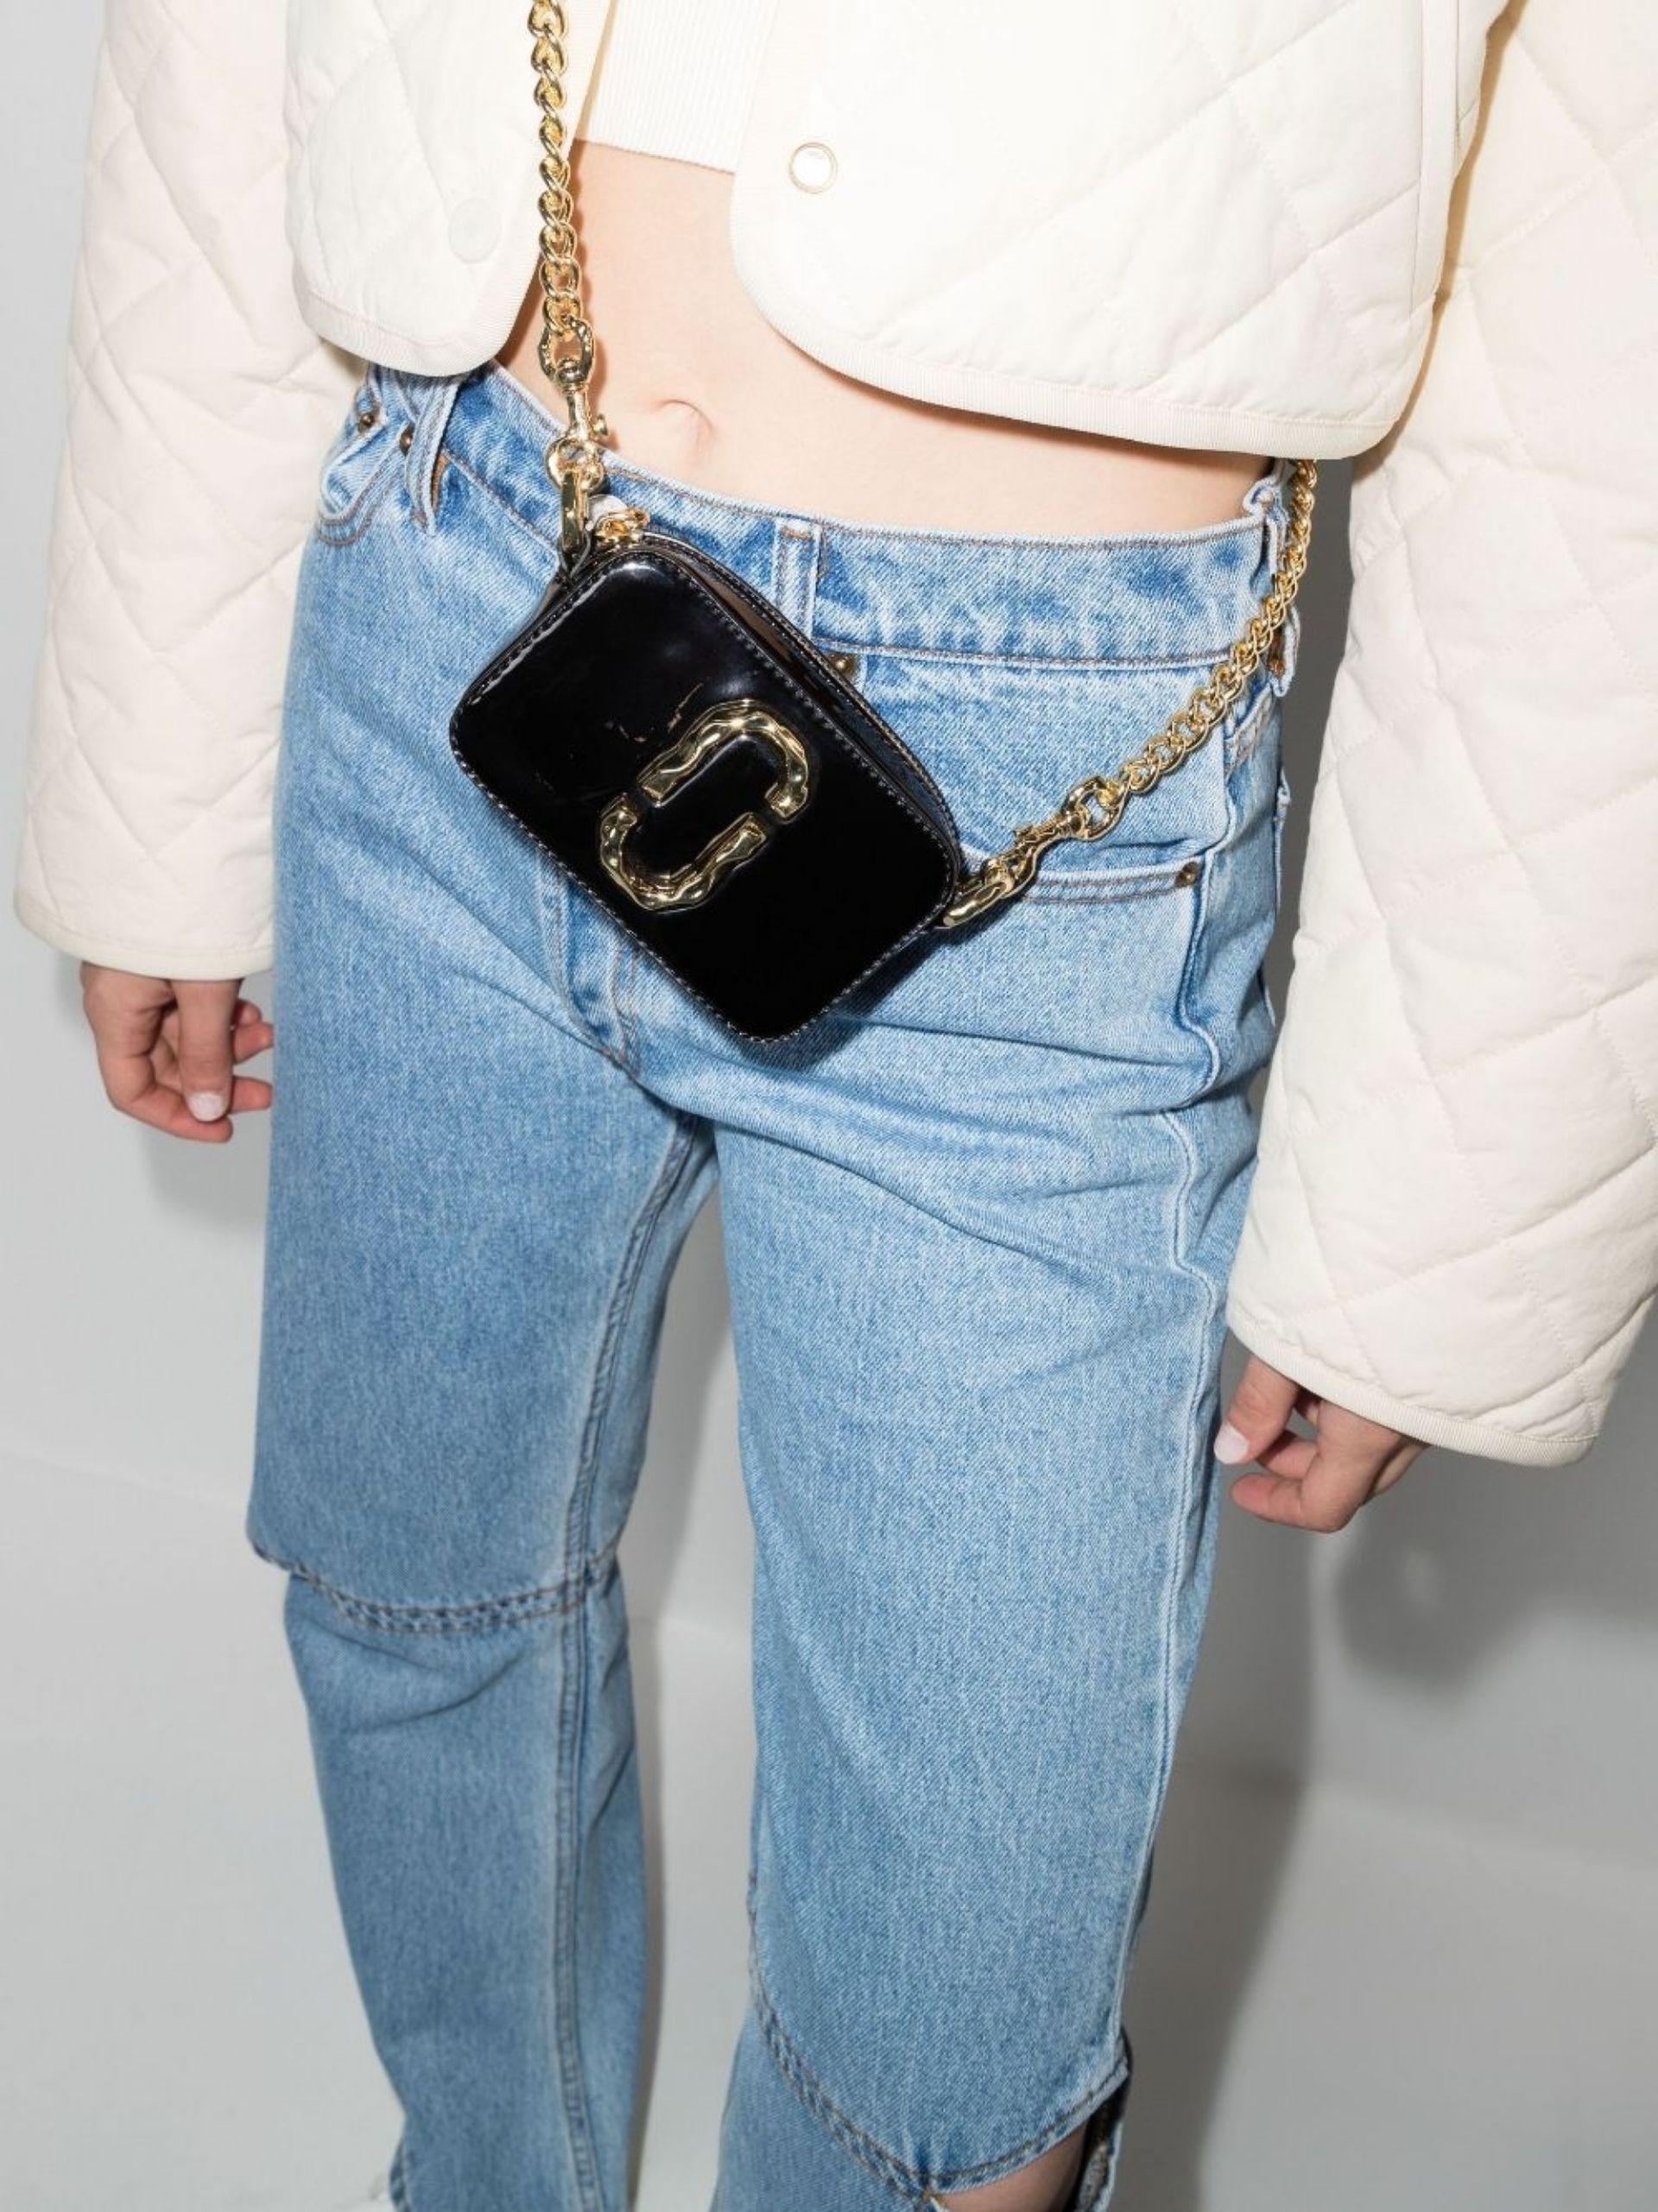 Marc Jacobs Small Snapshot Bag